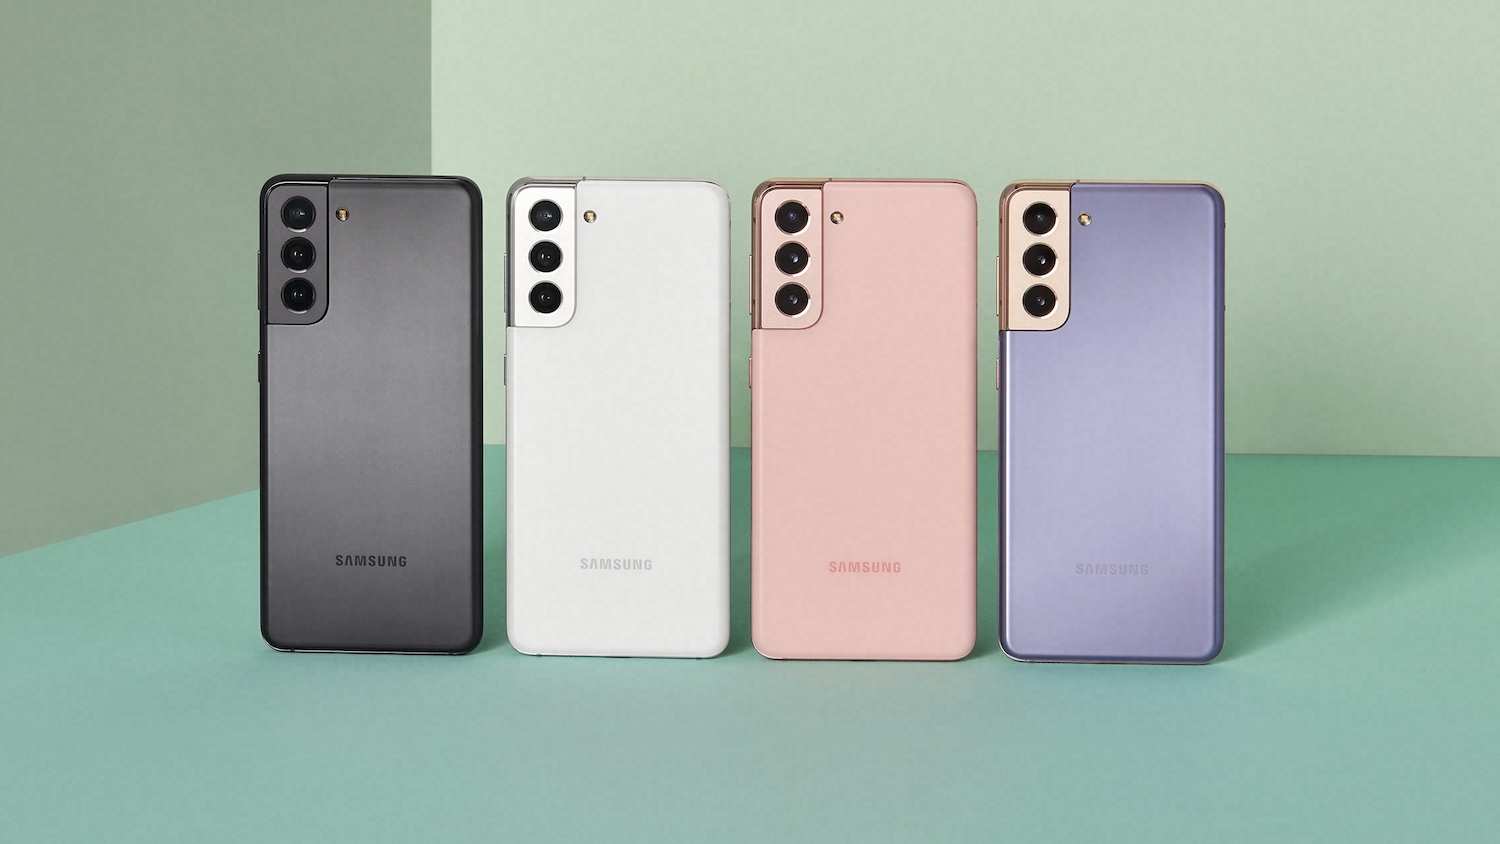 Smartphone Samsung Galaxy S21 Ultra 5G SM-G998B 256GB Câmera Quádrupla com  o Melhor Preço é no Zoom